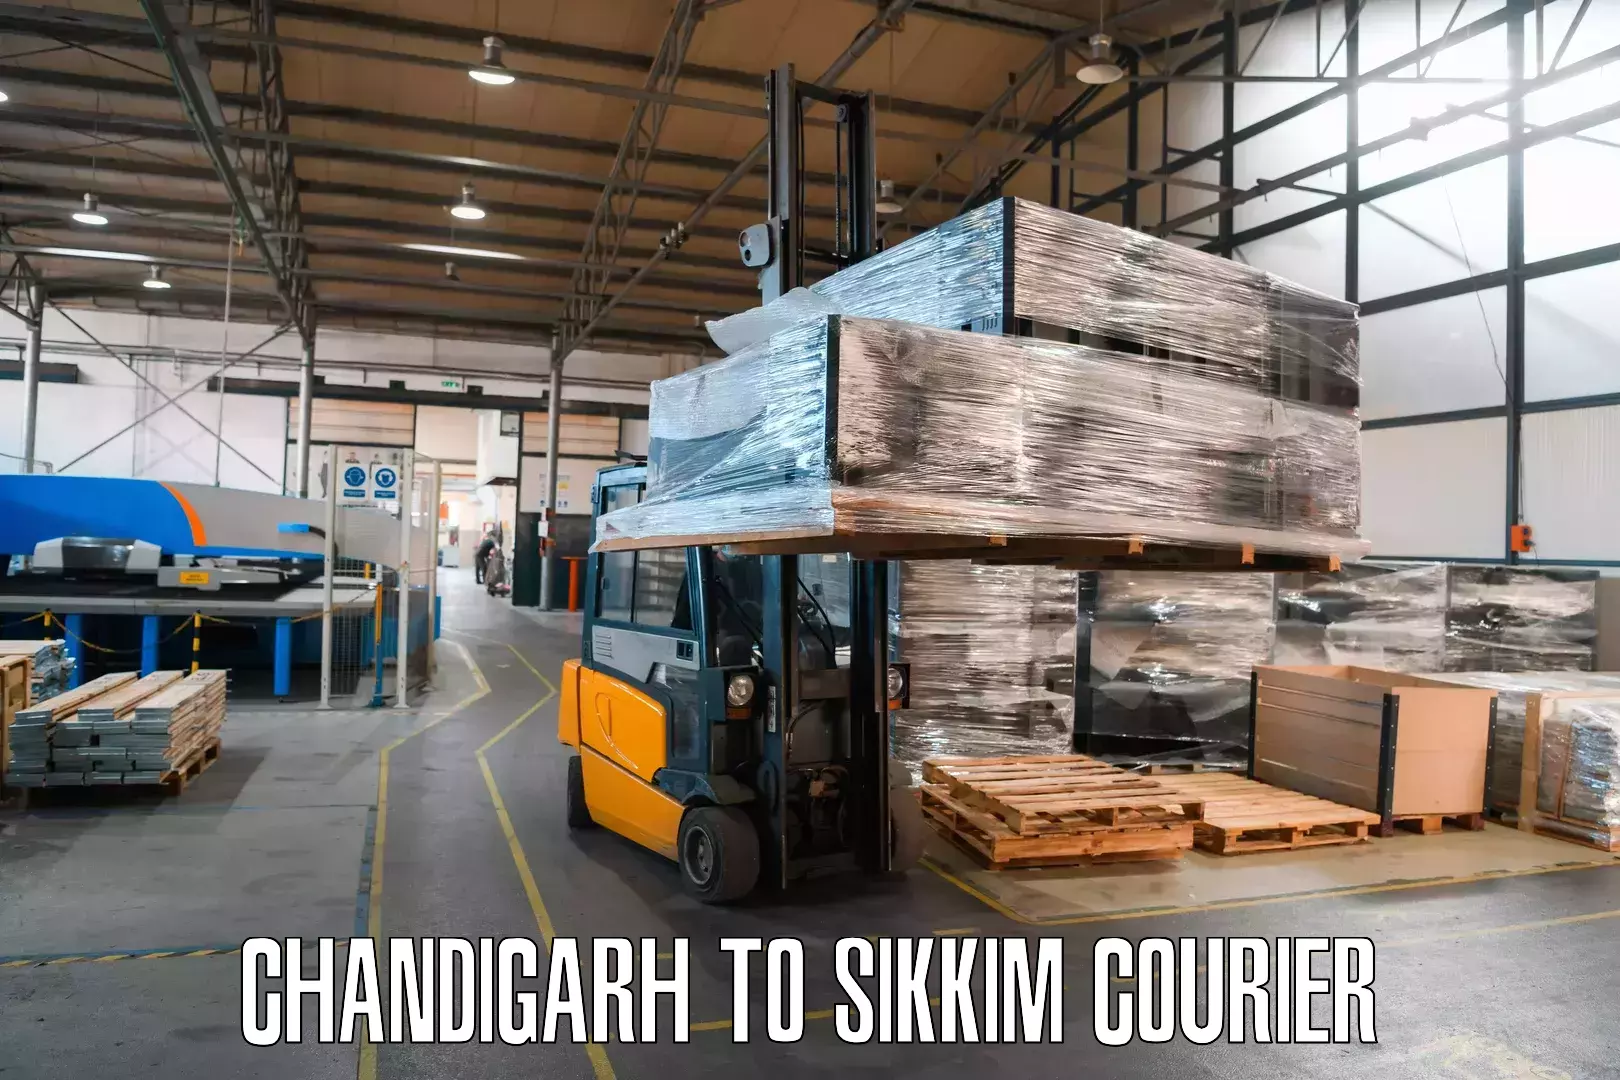 Cargo courier service Chandigarh to Sikkim